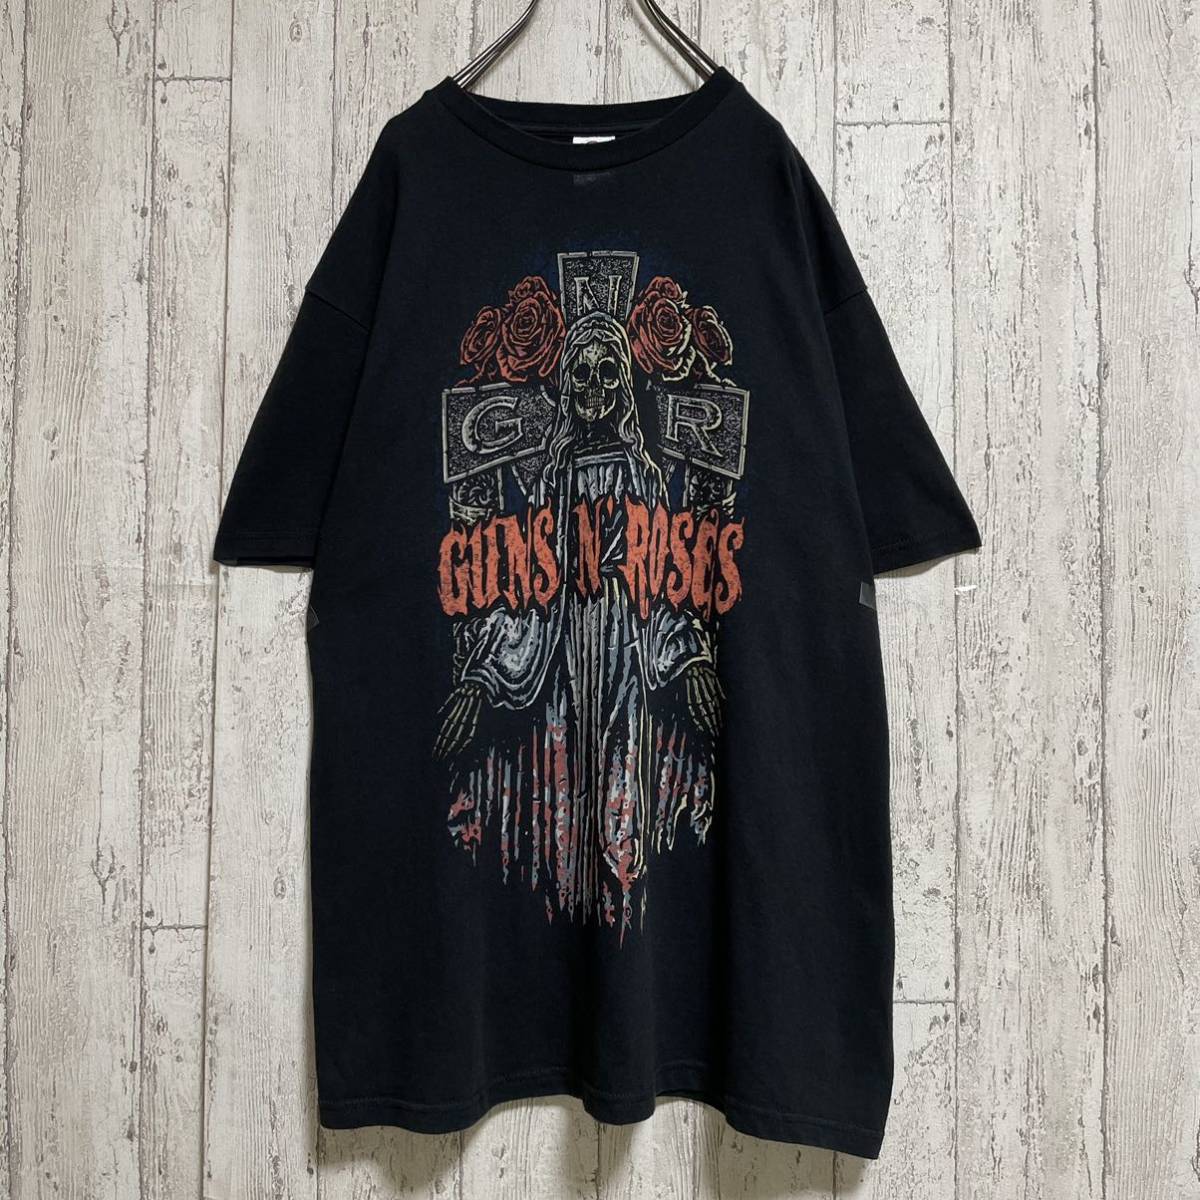 ☆送料無料☆ Guns N' Roses ガンズアンドローゼズ バンドTシャツ Lサイズ メキシコ製 ビッグプリント 2009 21-182